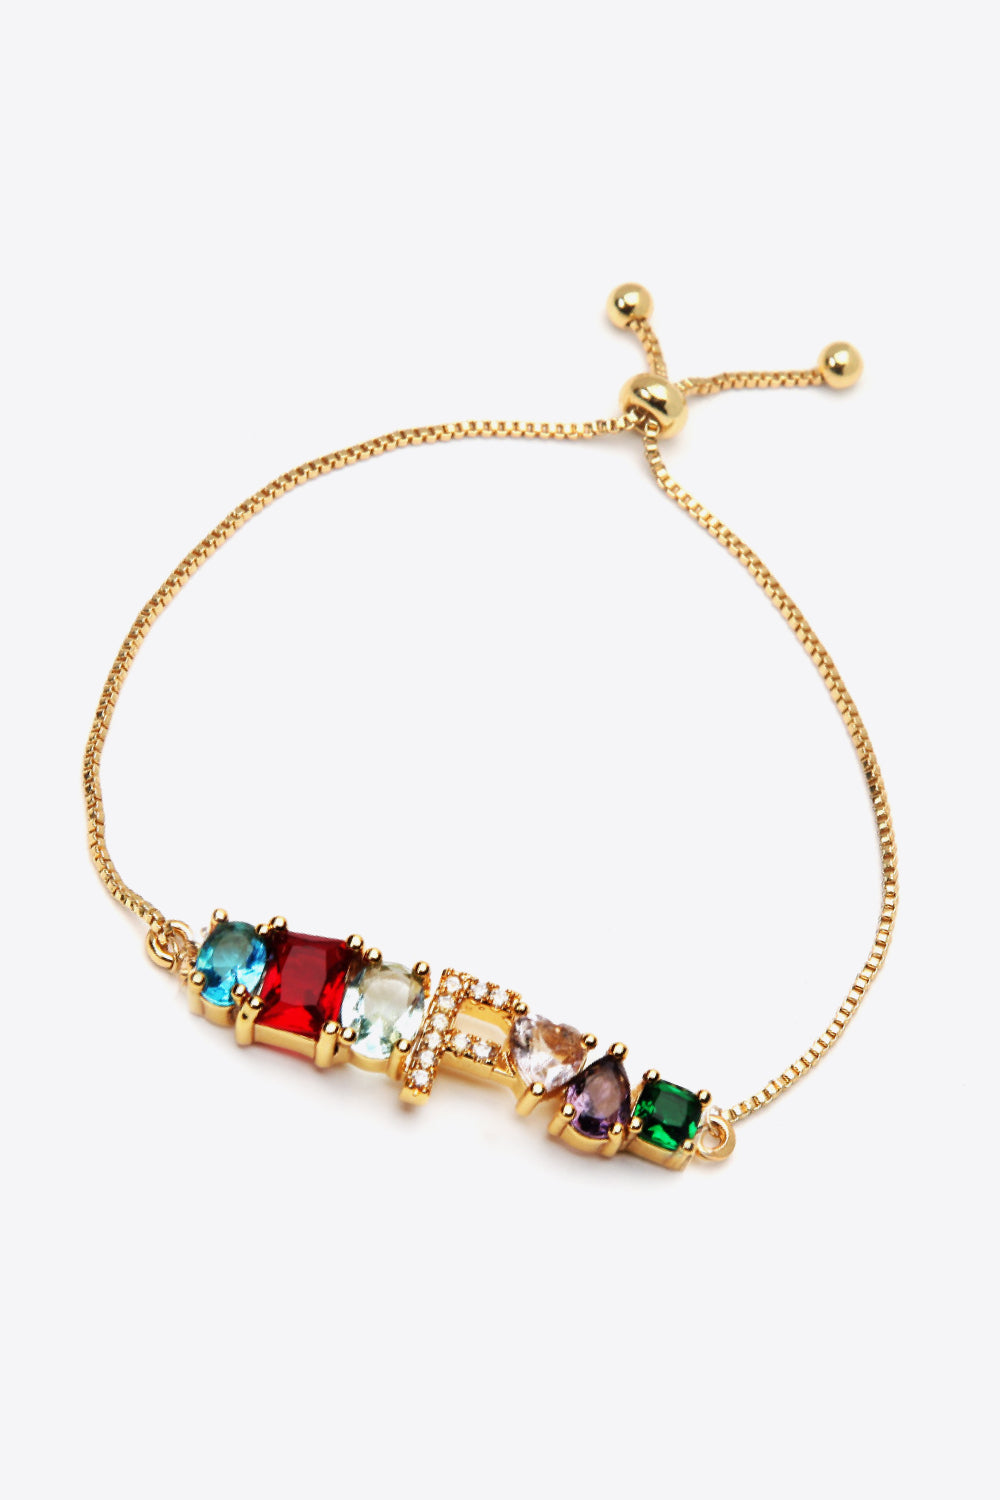 K to T Zircon Bracelet - Women’s Jewelry - Bracelets - 17 - 2024